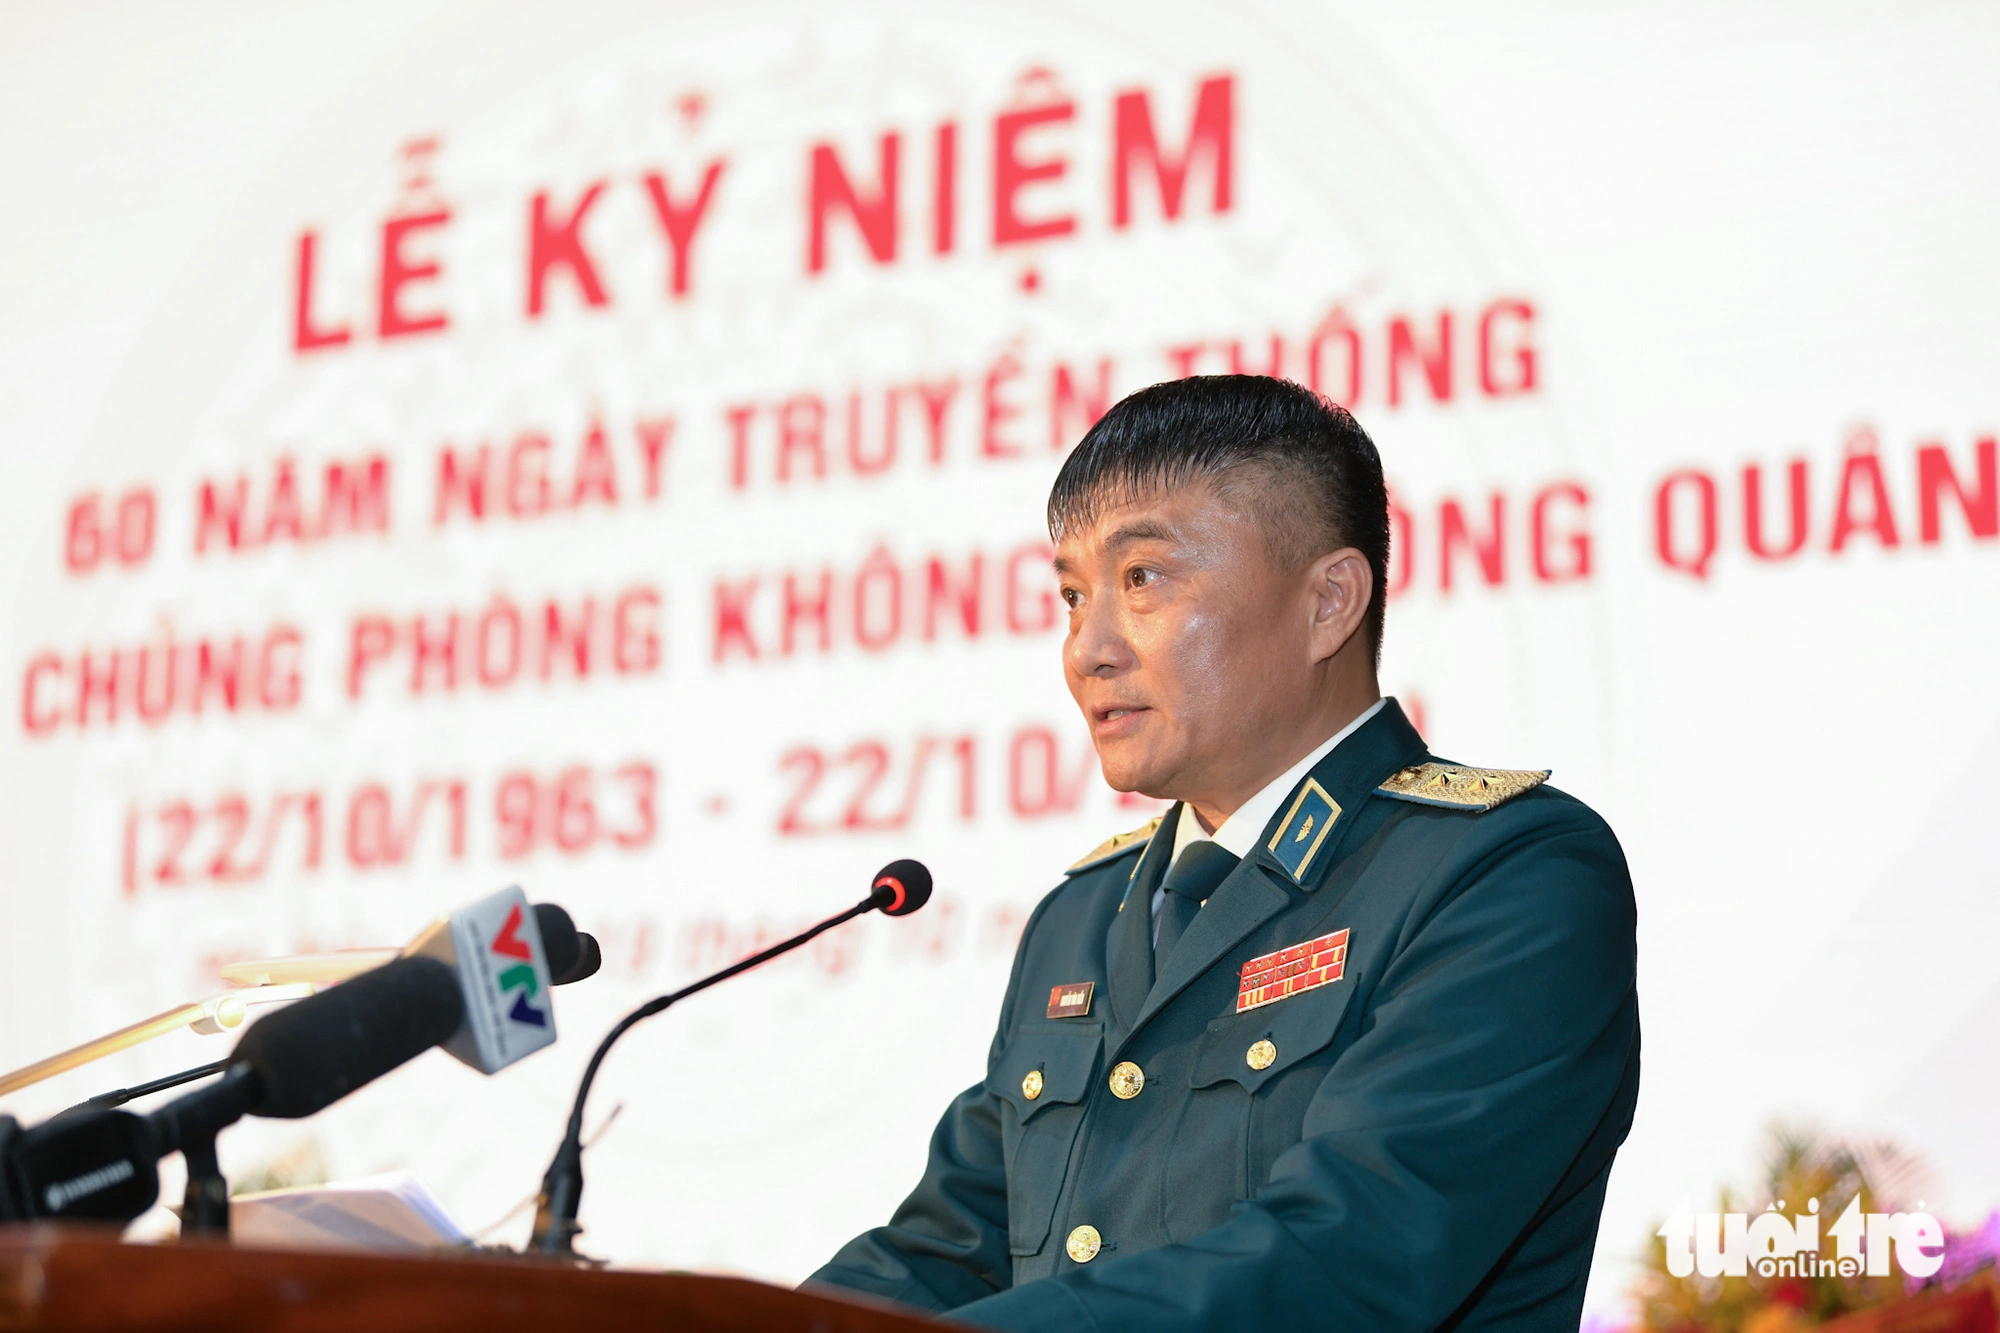 Trung tướng Nguyễn Văn Hiền, tư lệnh Quân chủng Phòng không - Không quân, phát biểu tại buổi lễ